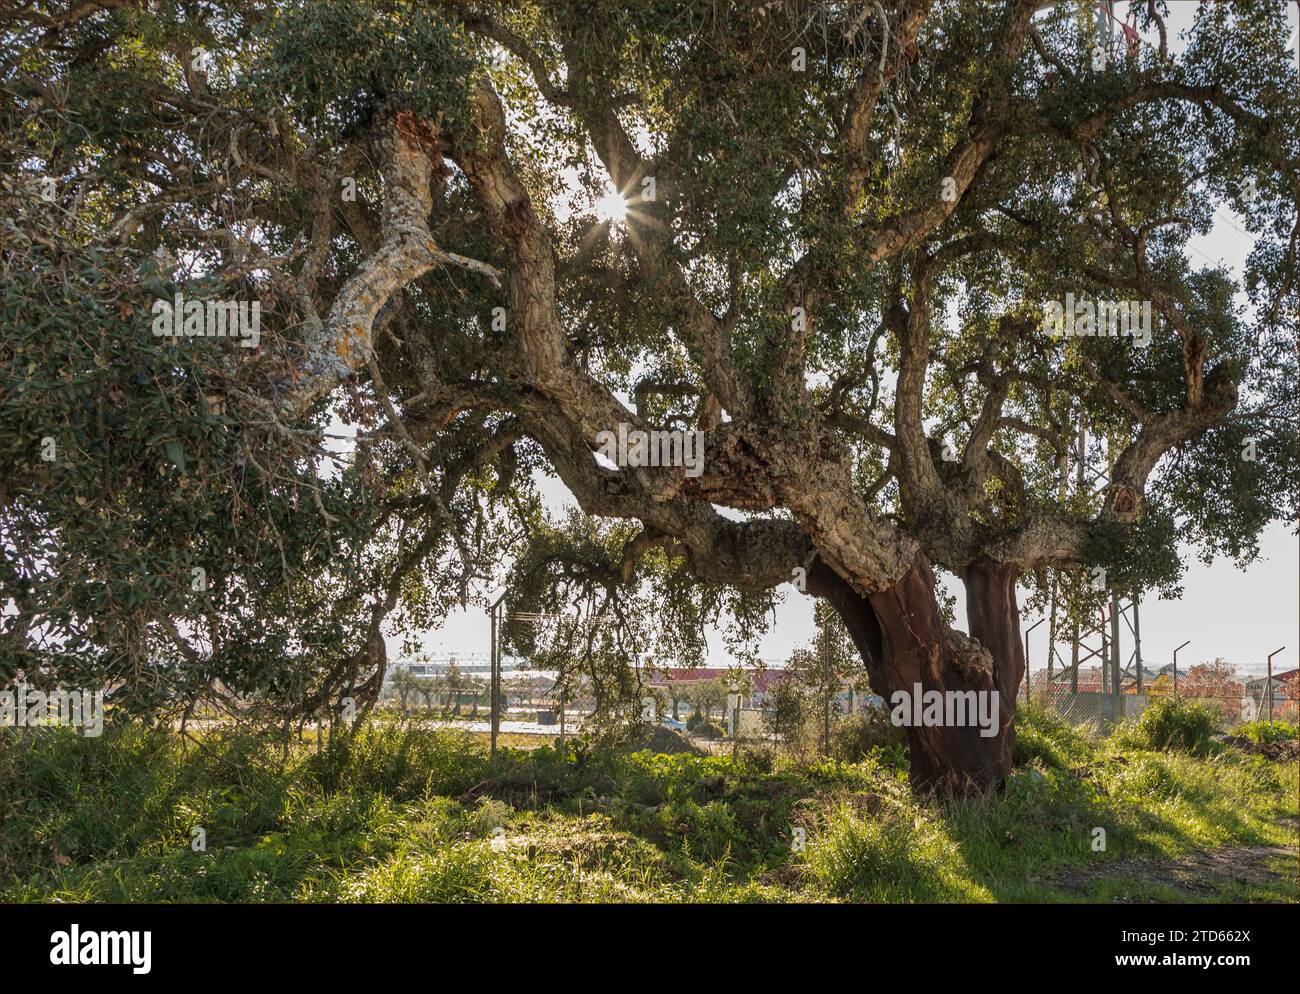 Le soleil brille à travers les branches d'un chêne-liège avec des signes que l'arbre a été récolté de façon récurrente Banque D'Images